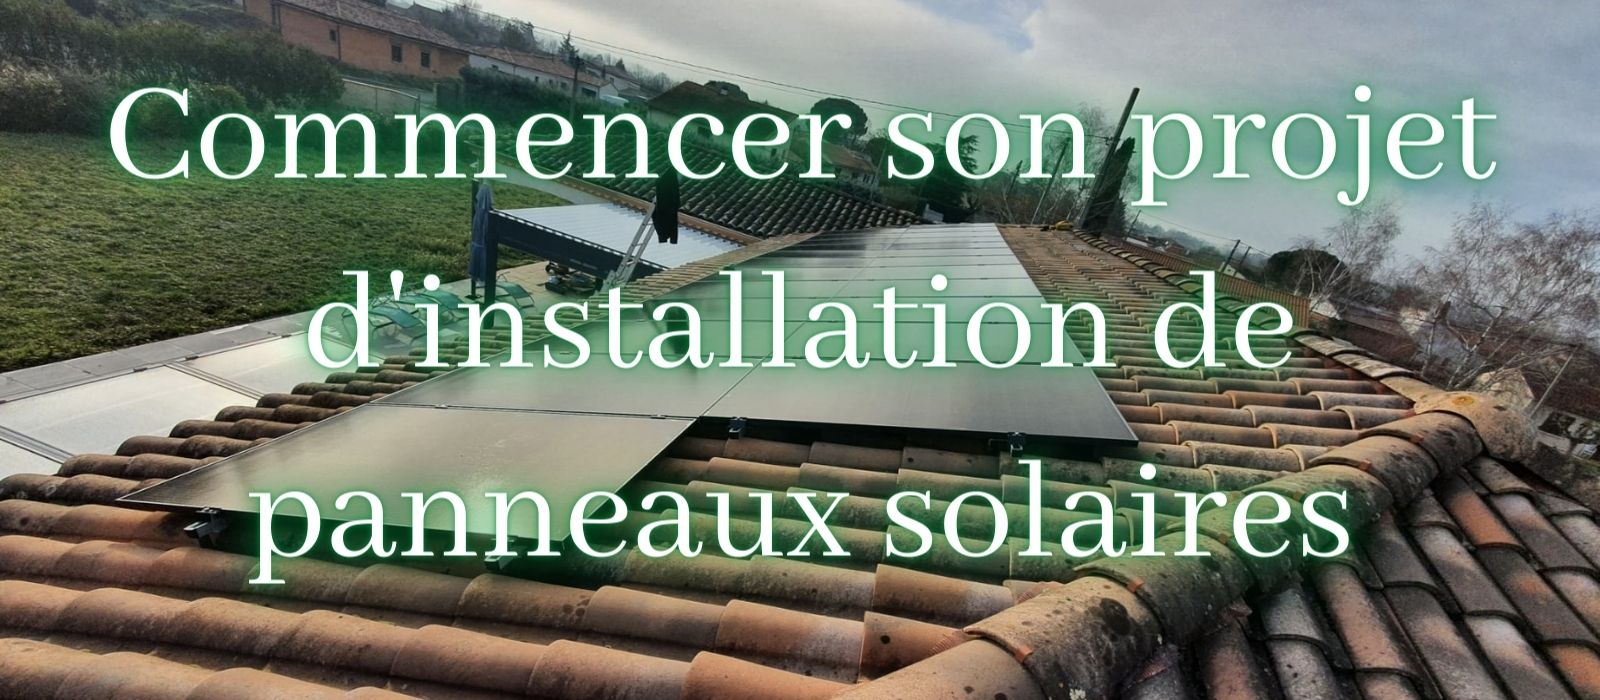 Commencer son projet d'installation de panneaux solaires photovoltaiques